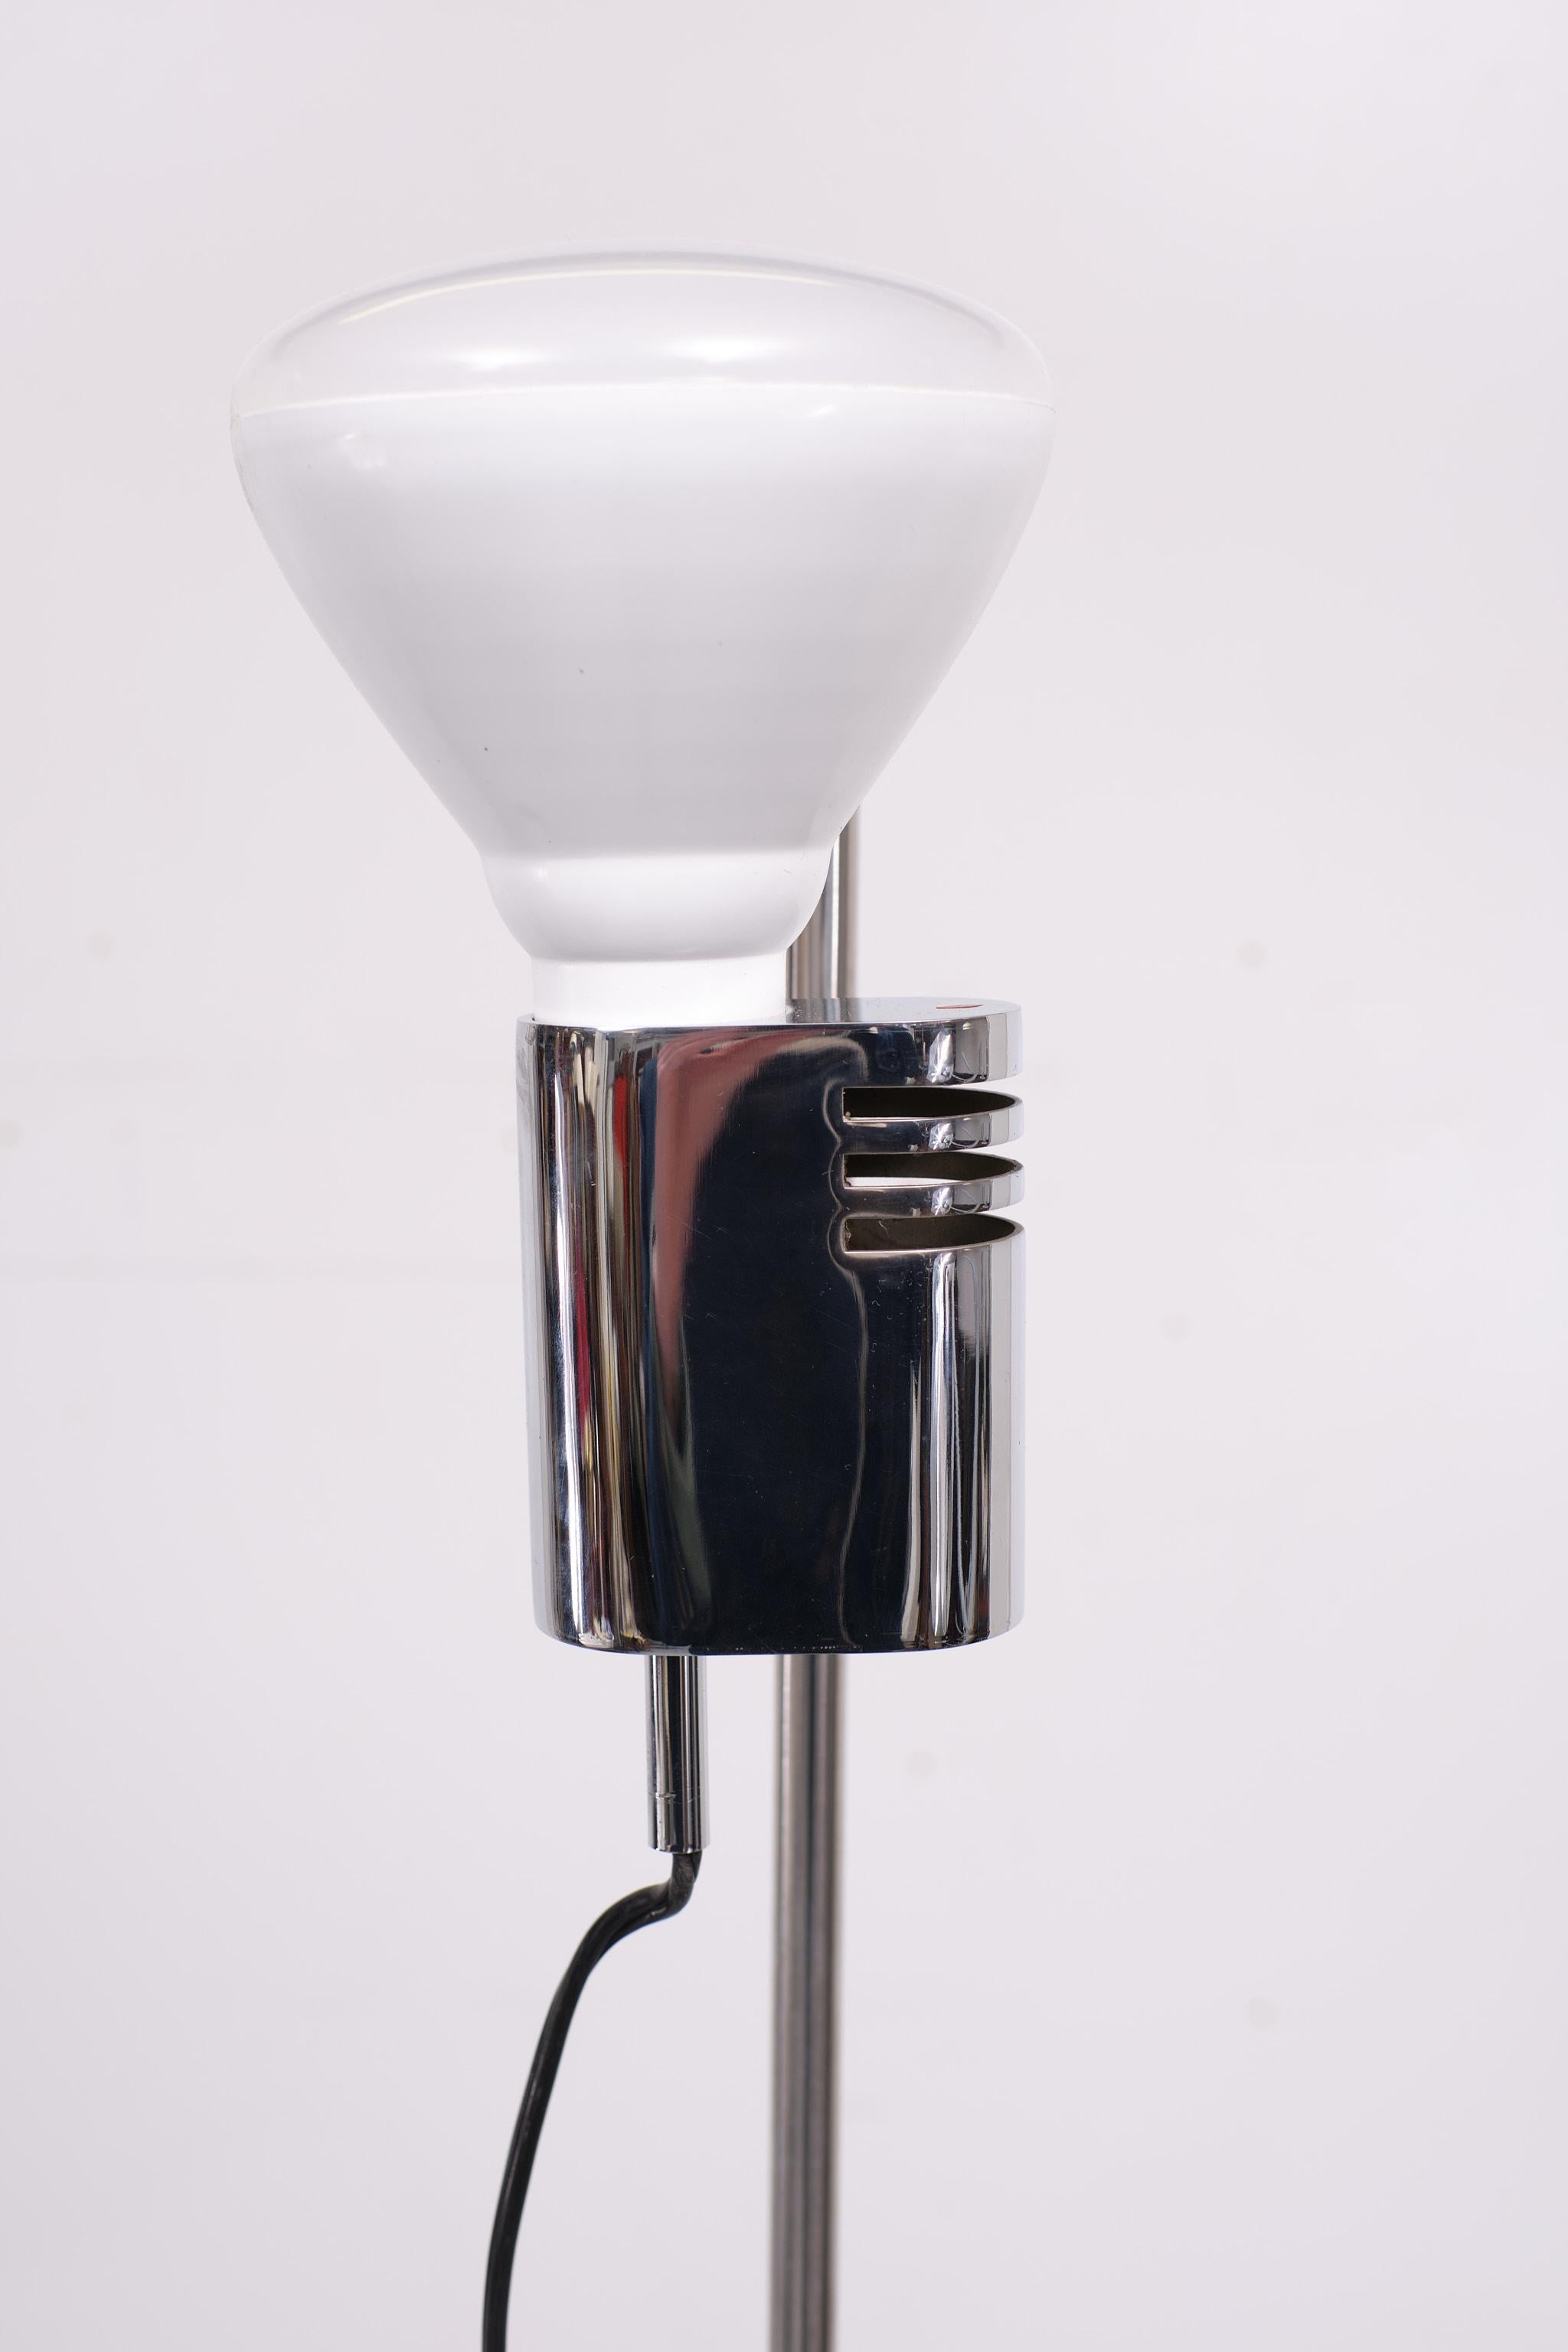 Floor Spot Lamp, Italian, 1970s For Sale 1